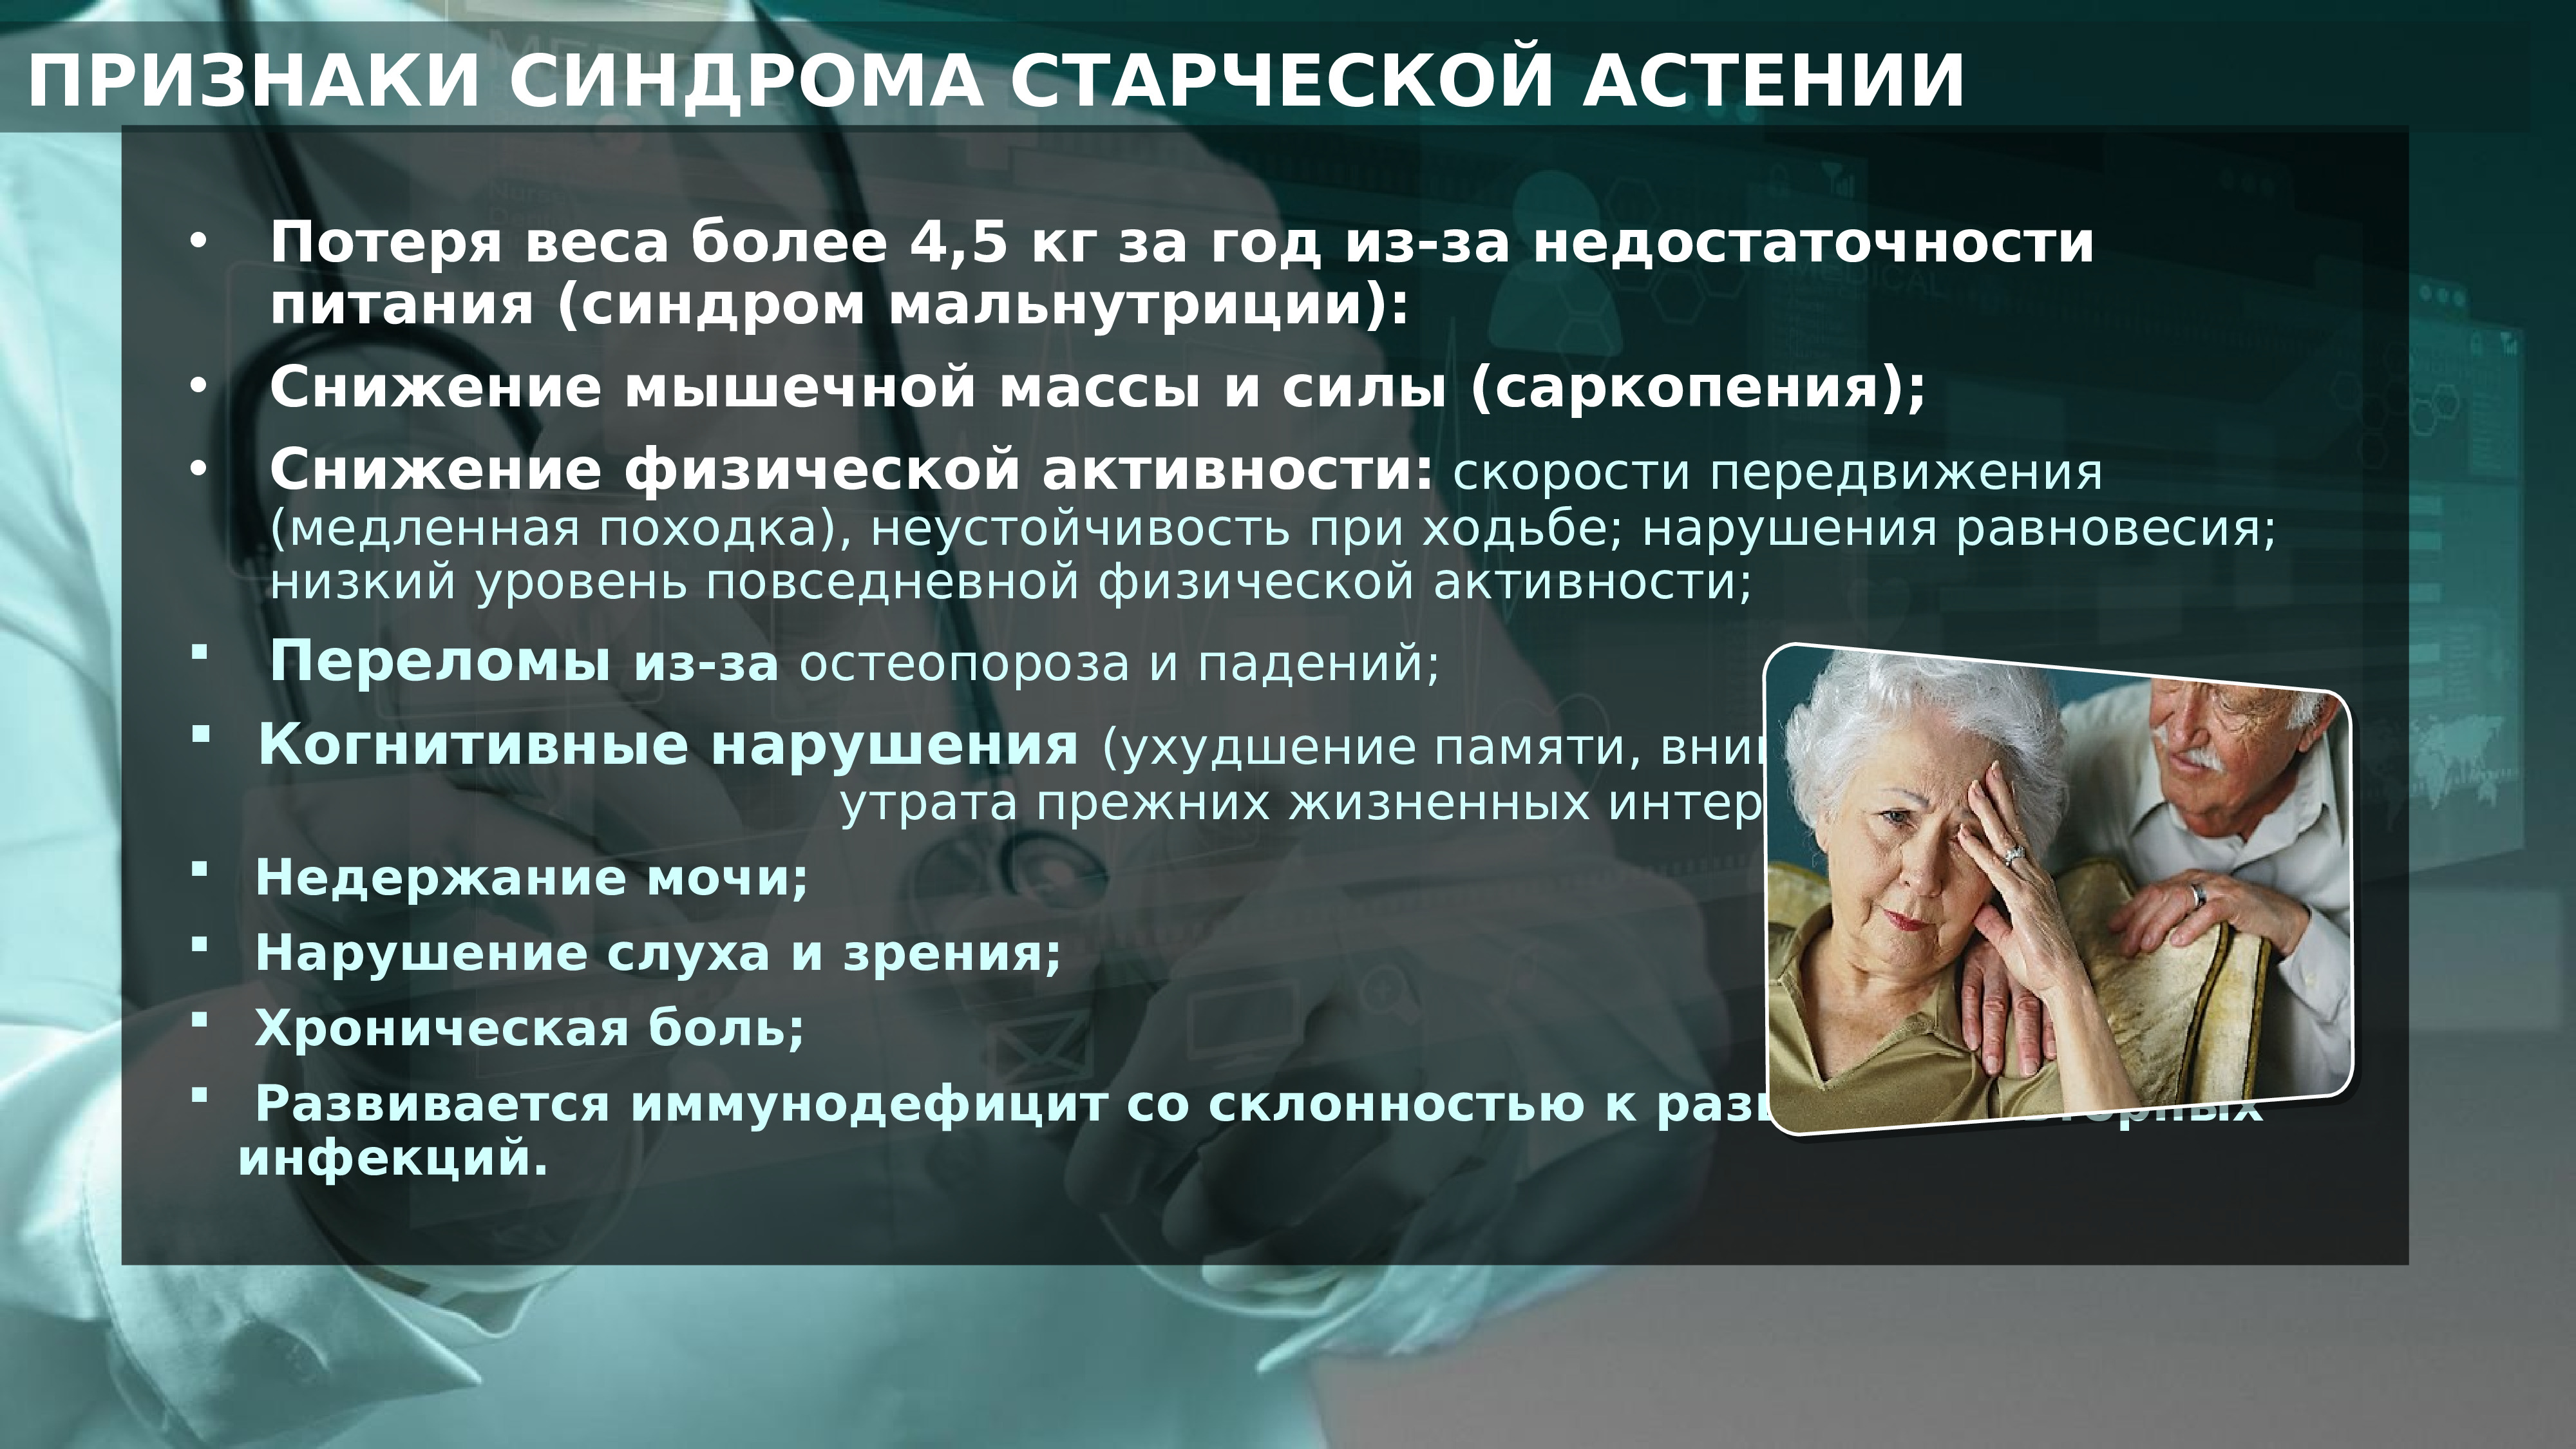 Старческая деменция это. Синдром старческой астении. Синдром старческой астении презентация. Астения у пожилых. Старческая астения презентация.